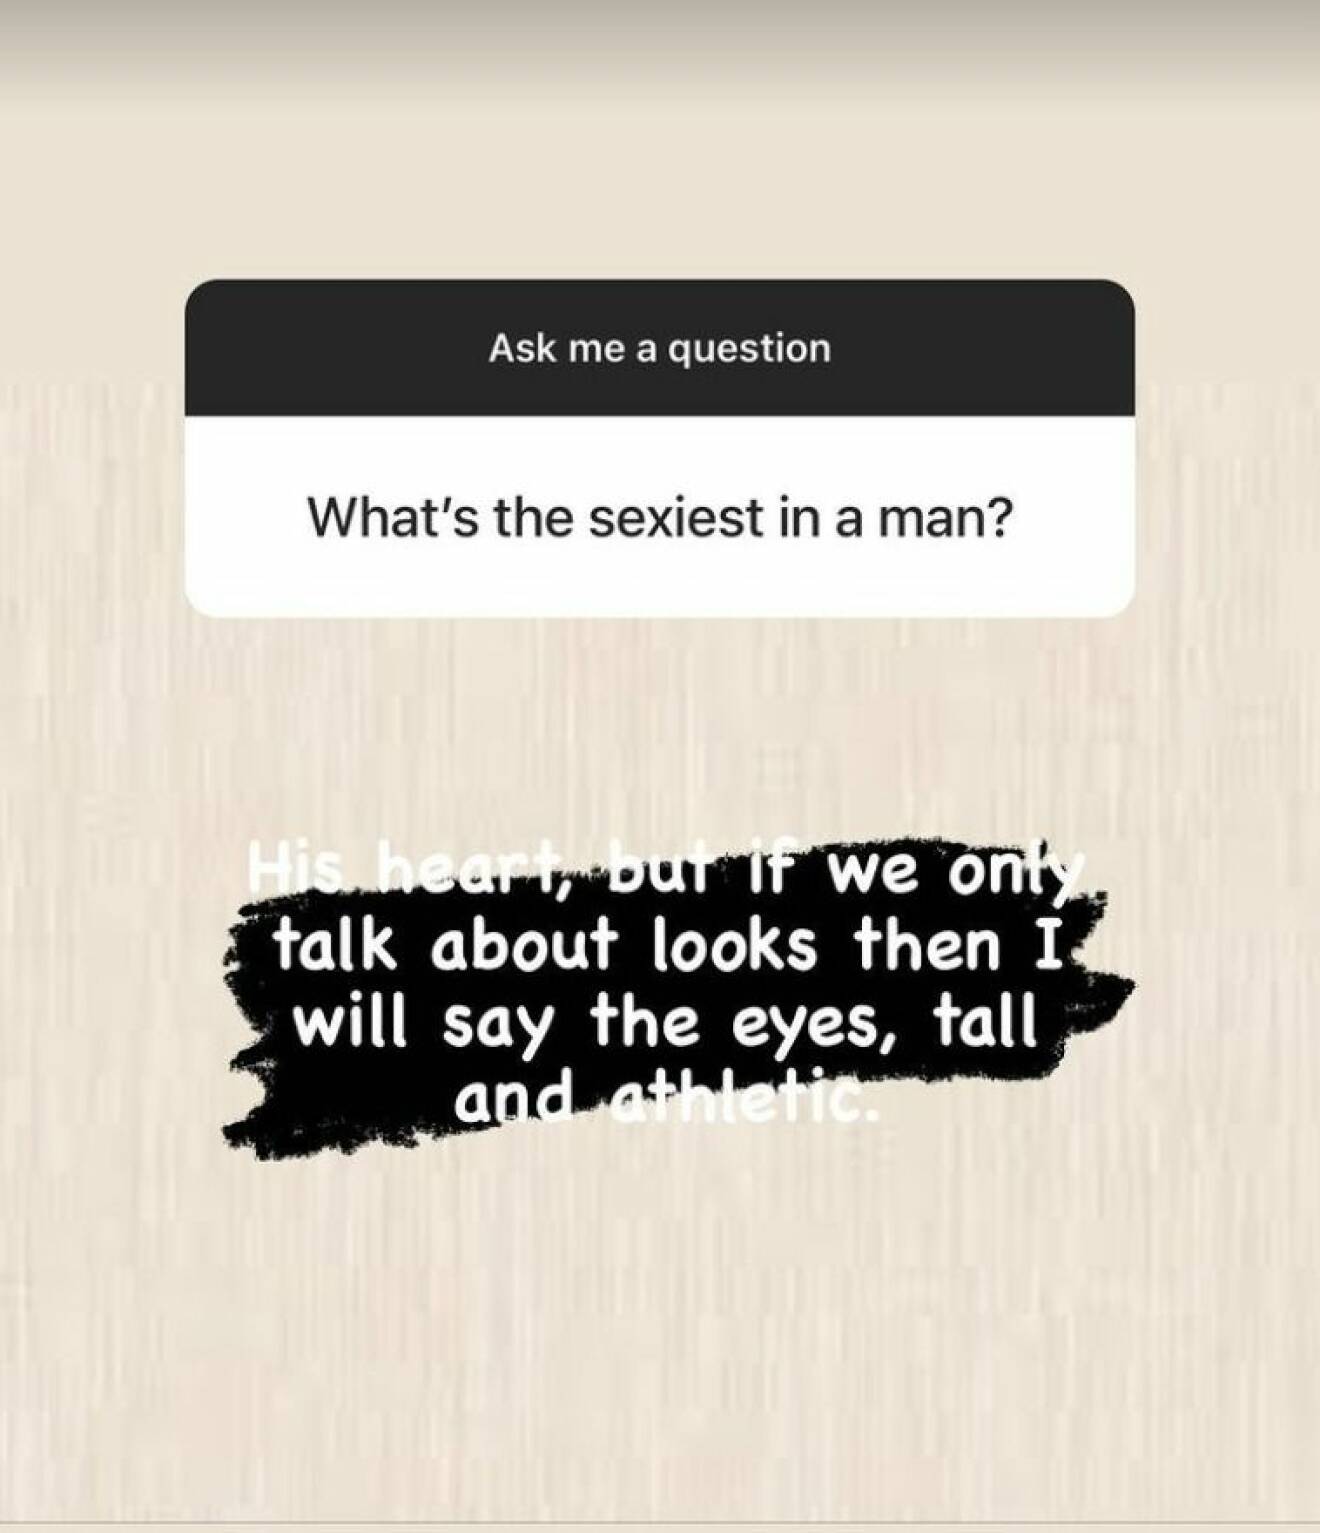 Elene Belle svarar på vad det sexigaste med en man är i en frågestund på Instagram.